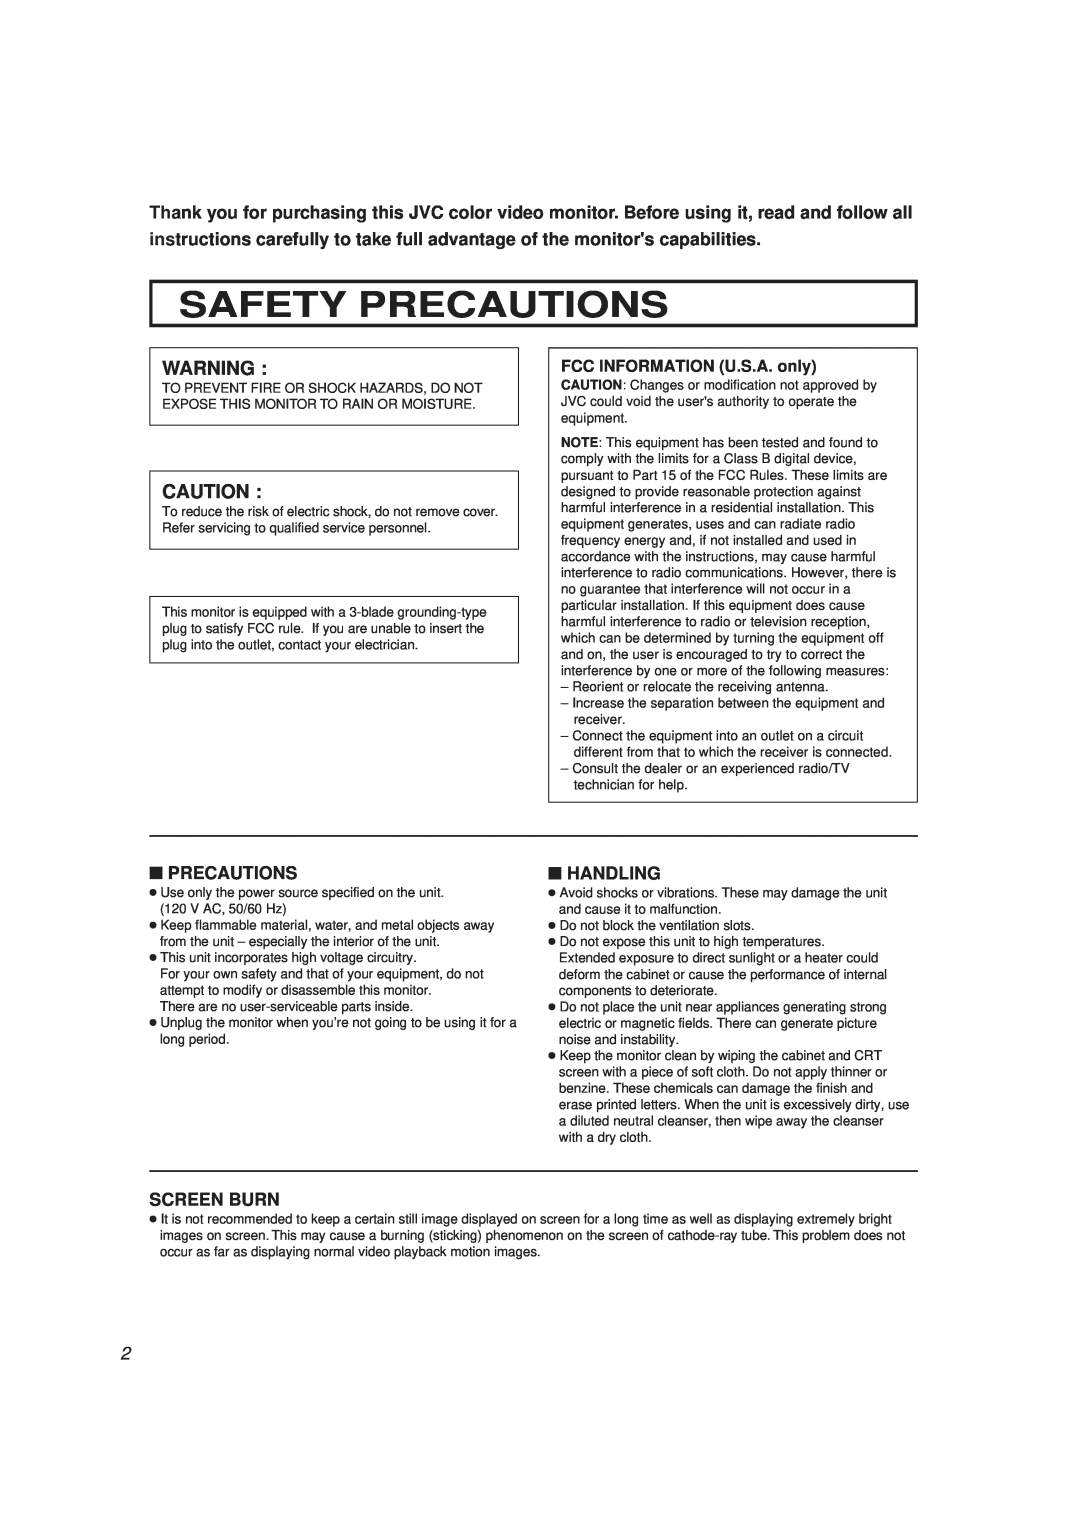 JVC TM-A13SU-W, TM-A13UCV manual Safety Precautions, Handling, Screen Burn 